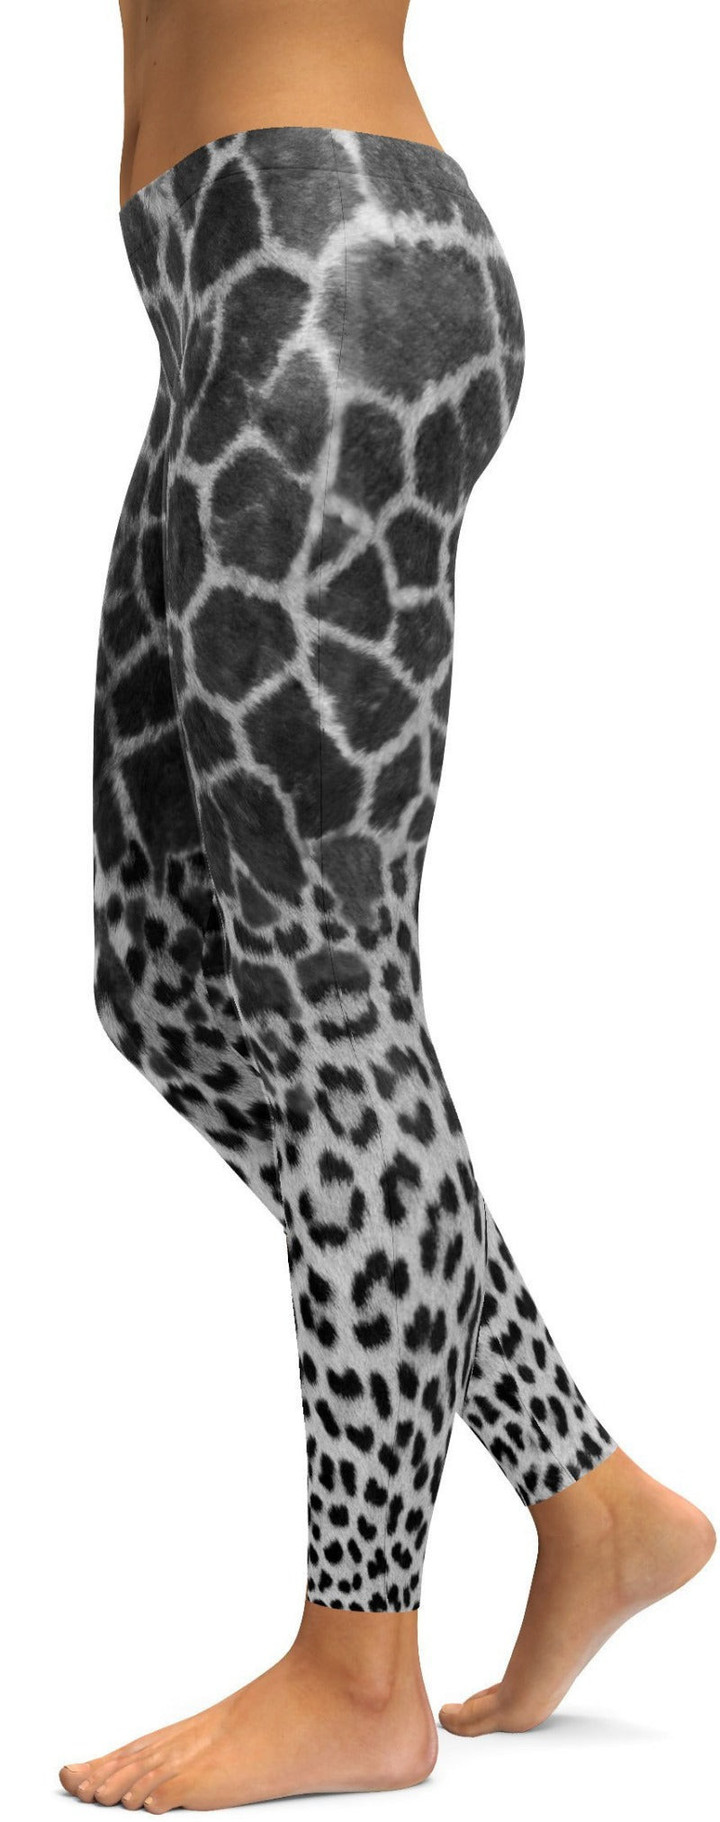 Giraffe & Leopard Skin High-Waisted Leggings